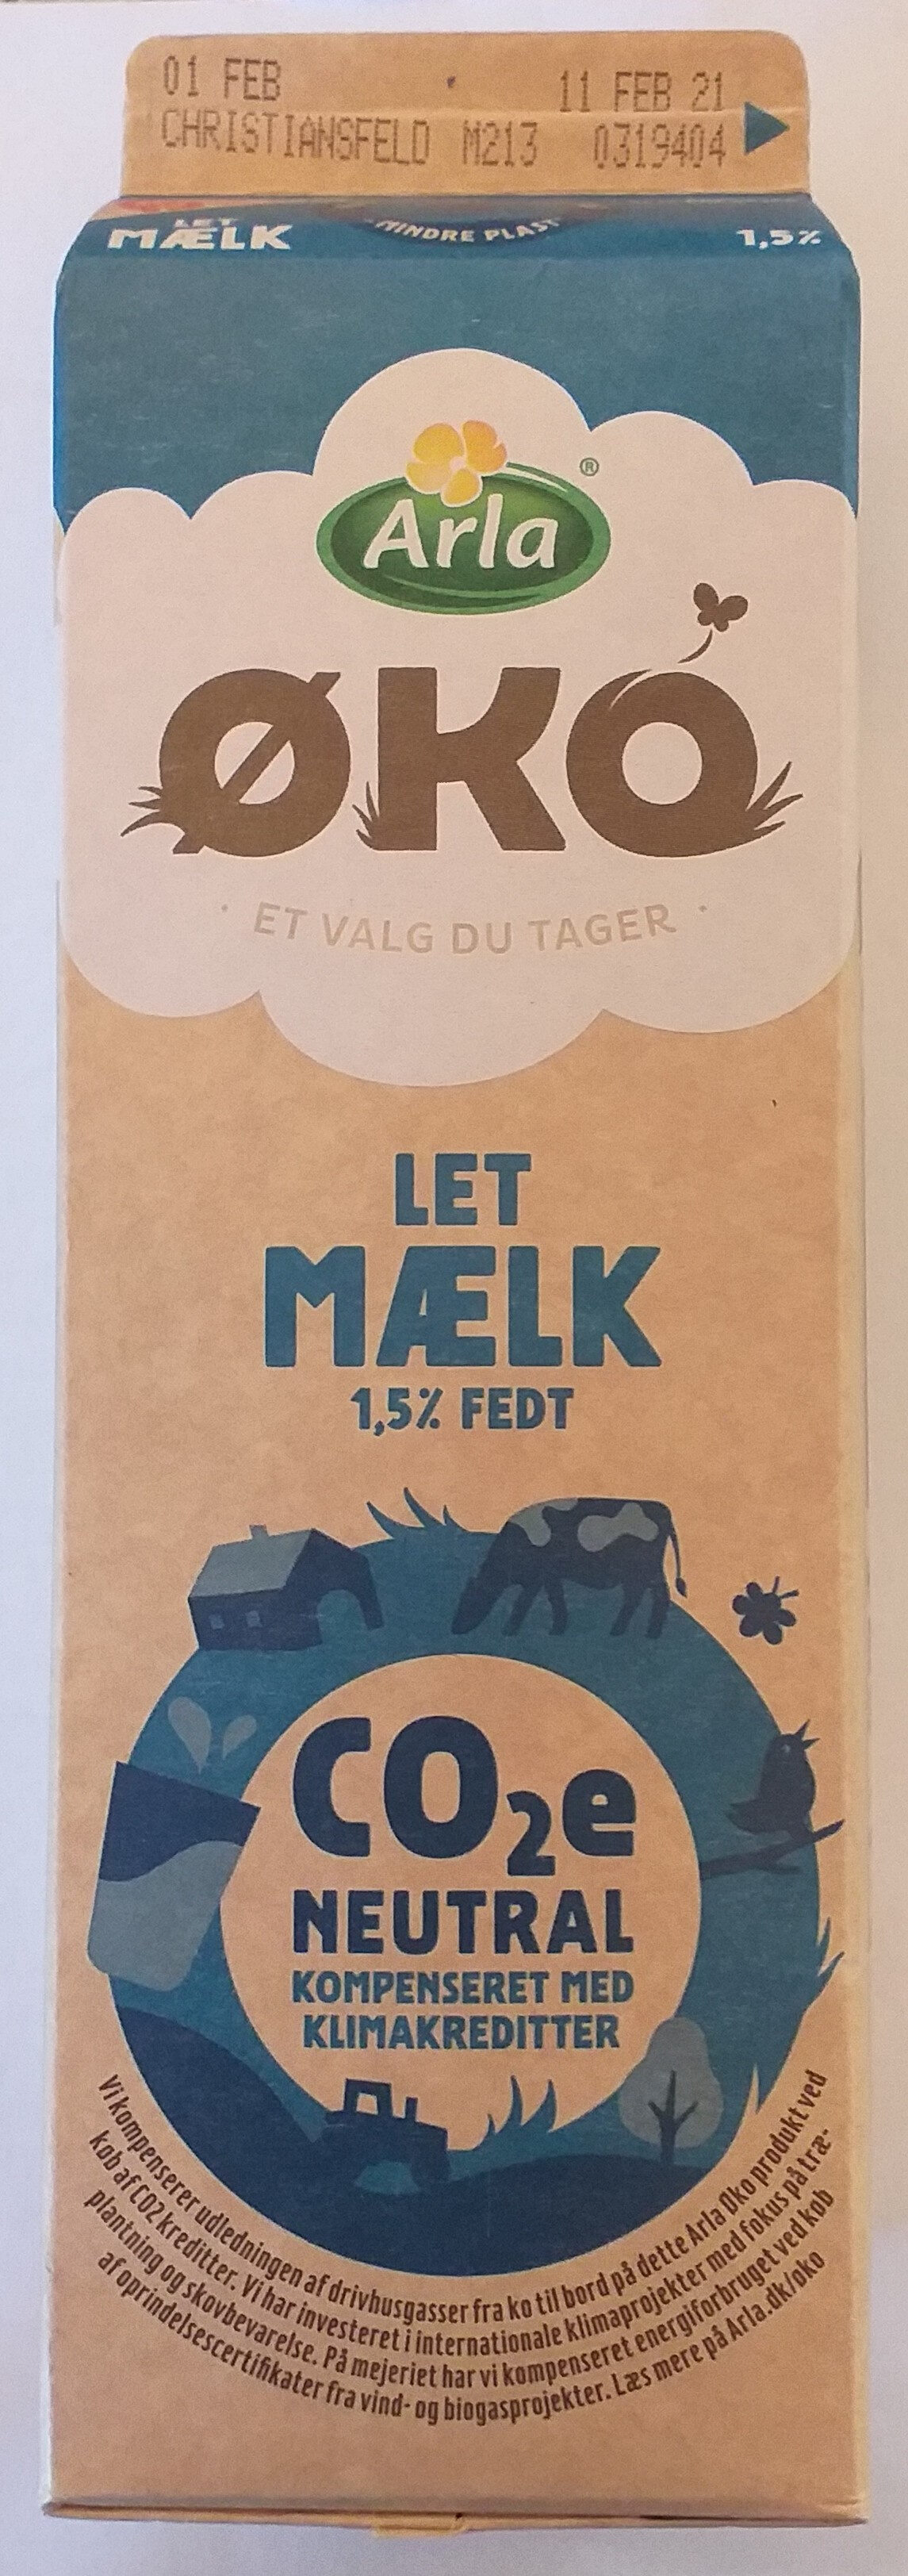 Øko Let Mælk 1,5% Fedt - Produkt